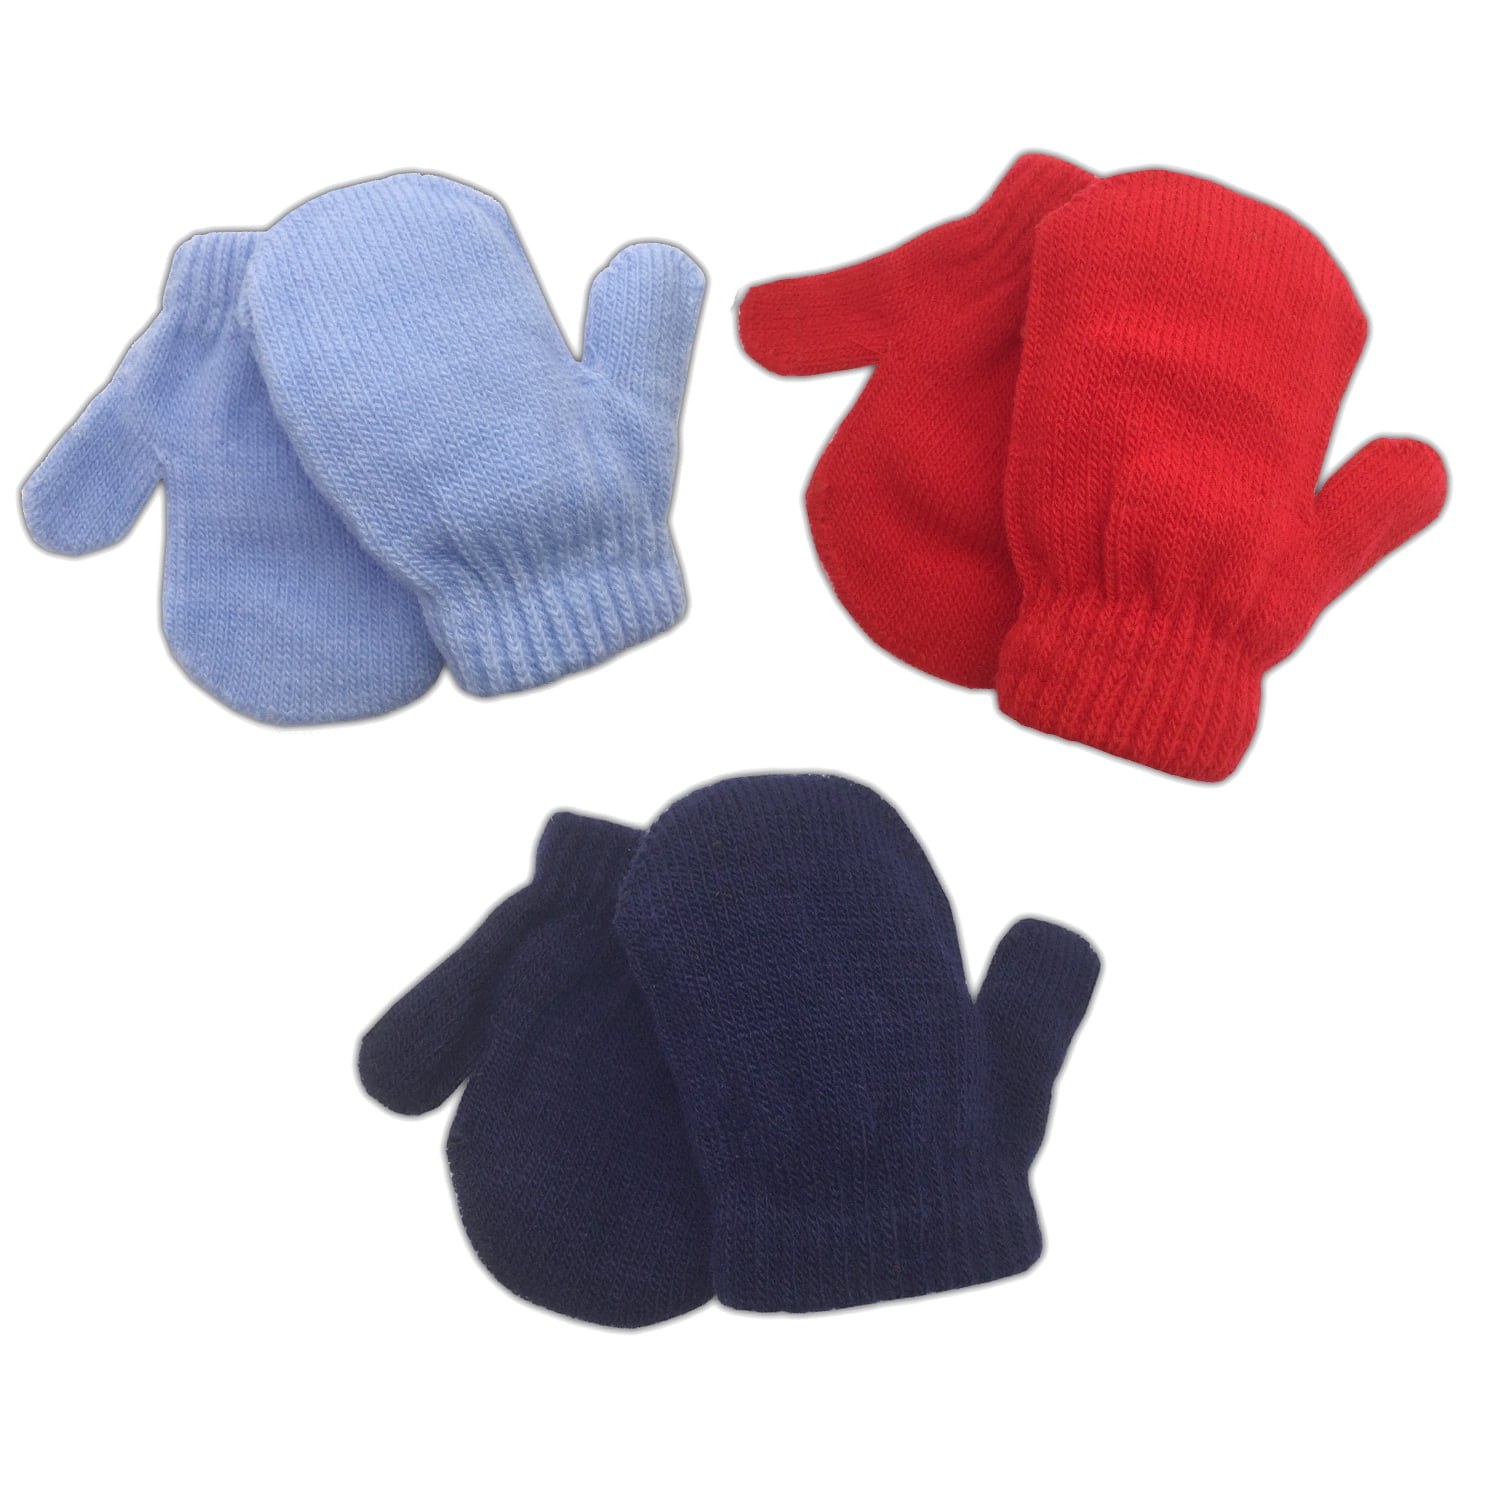 Unisex Newborn Baby Winter Fluffy Mittens With String White Gloves Size 0-6 M 